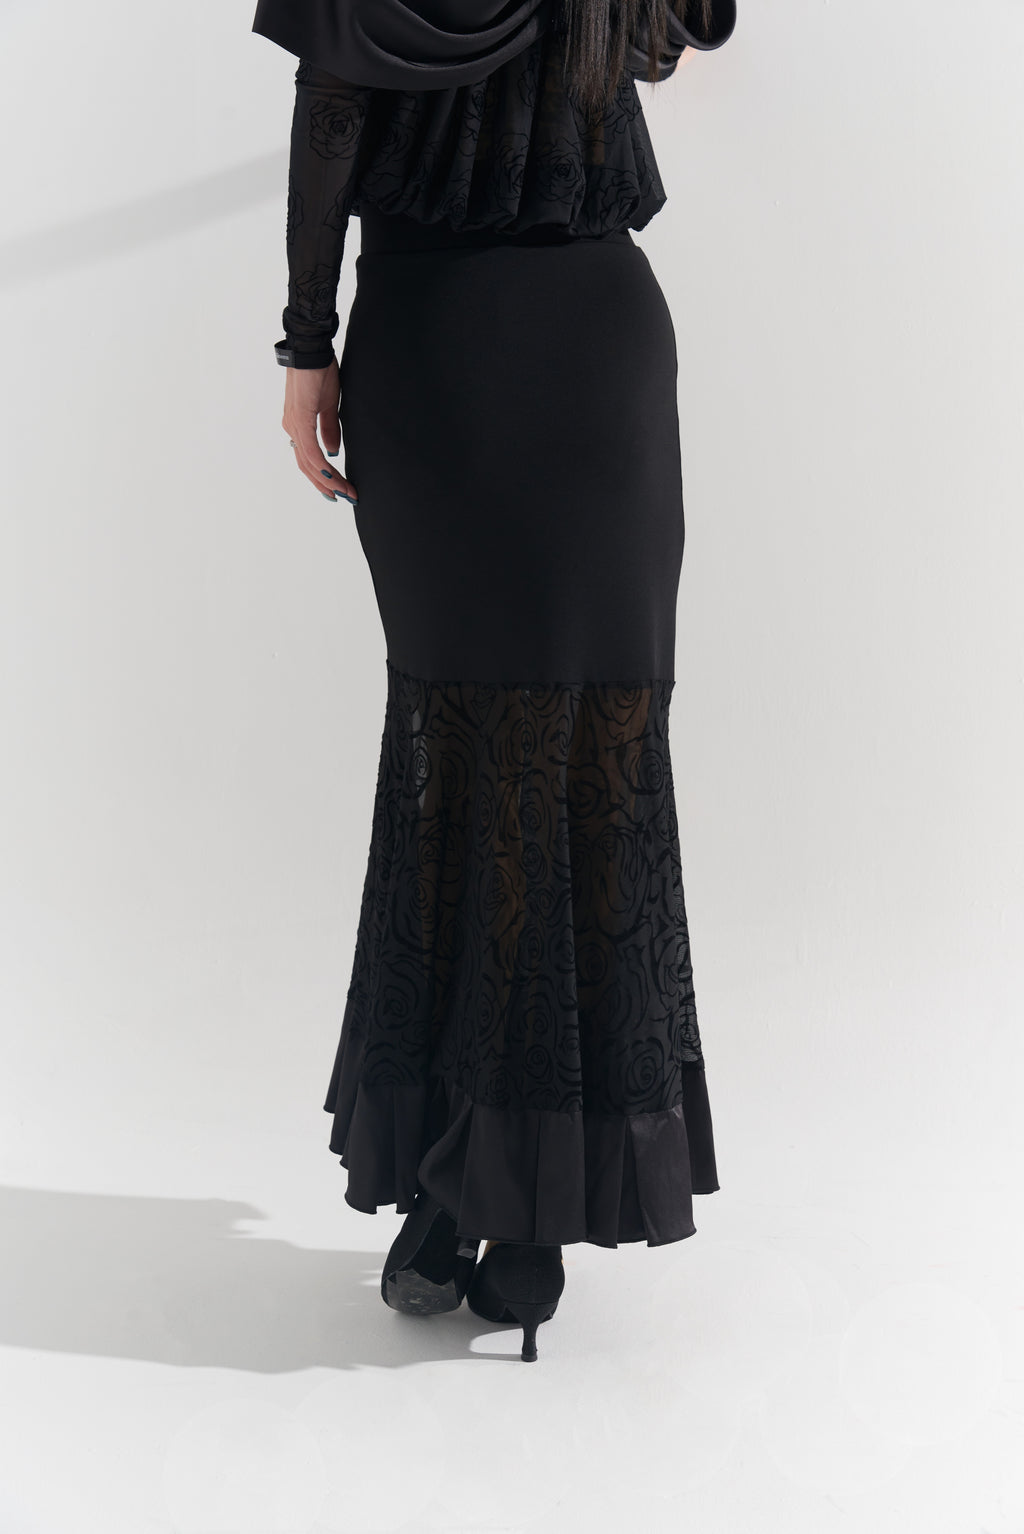 DQ-576 Black Rose Modern Skirt